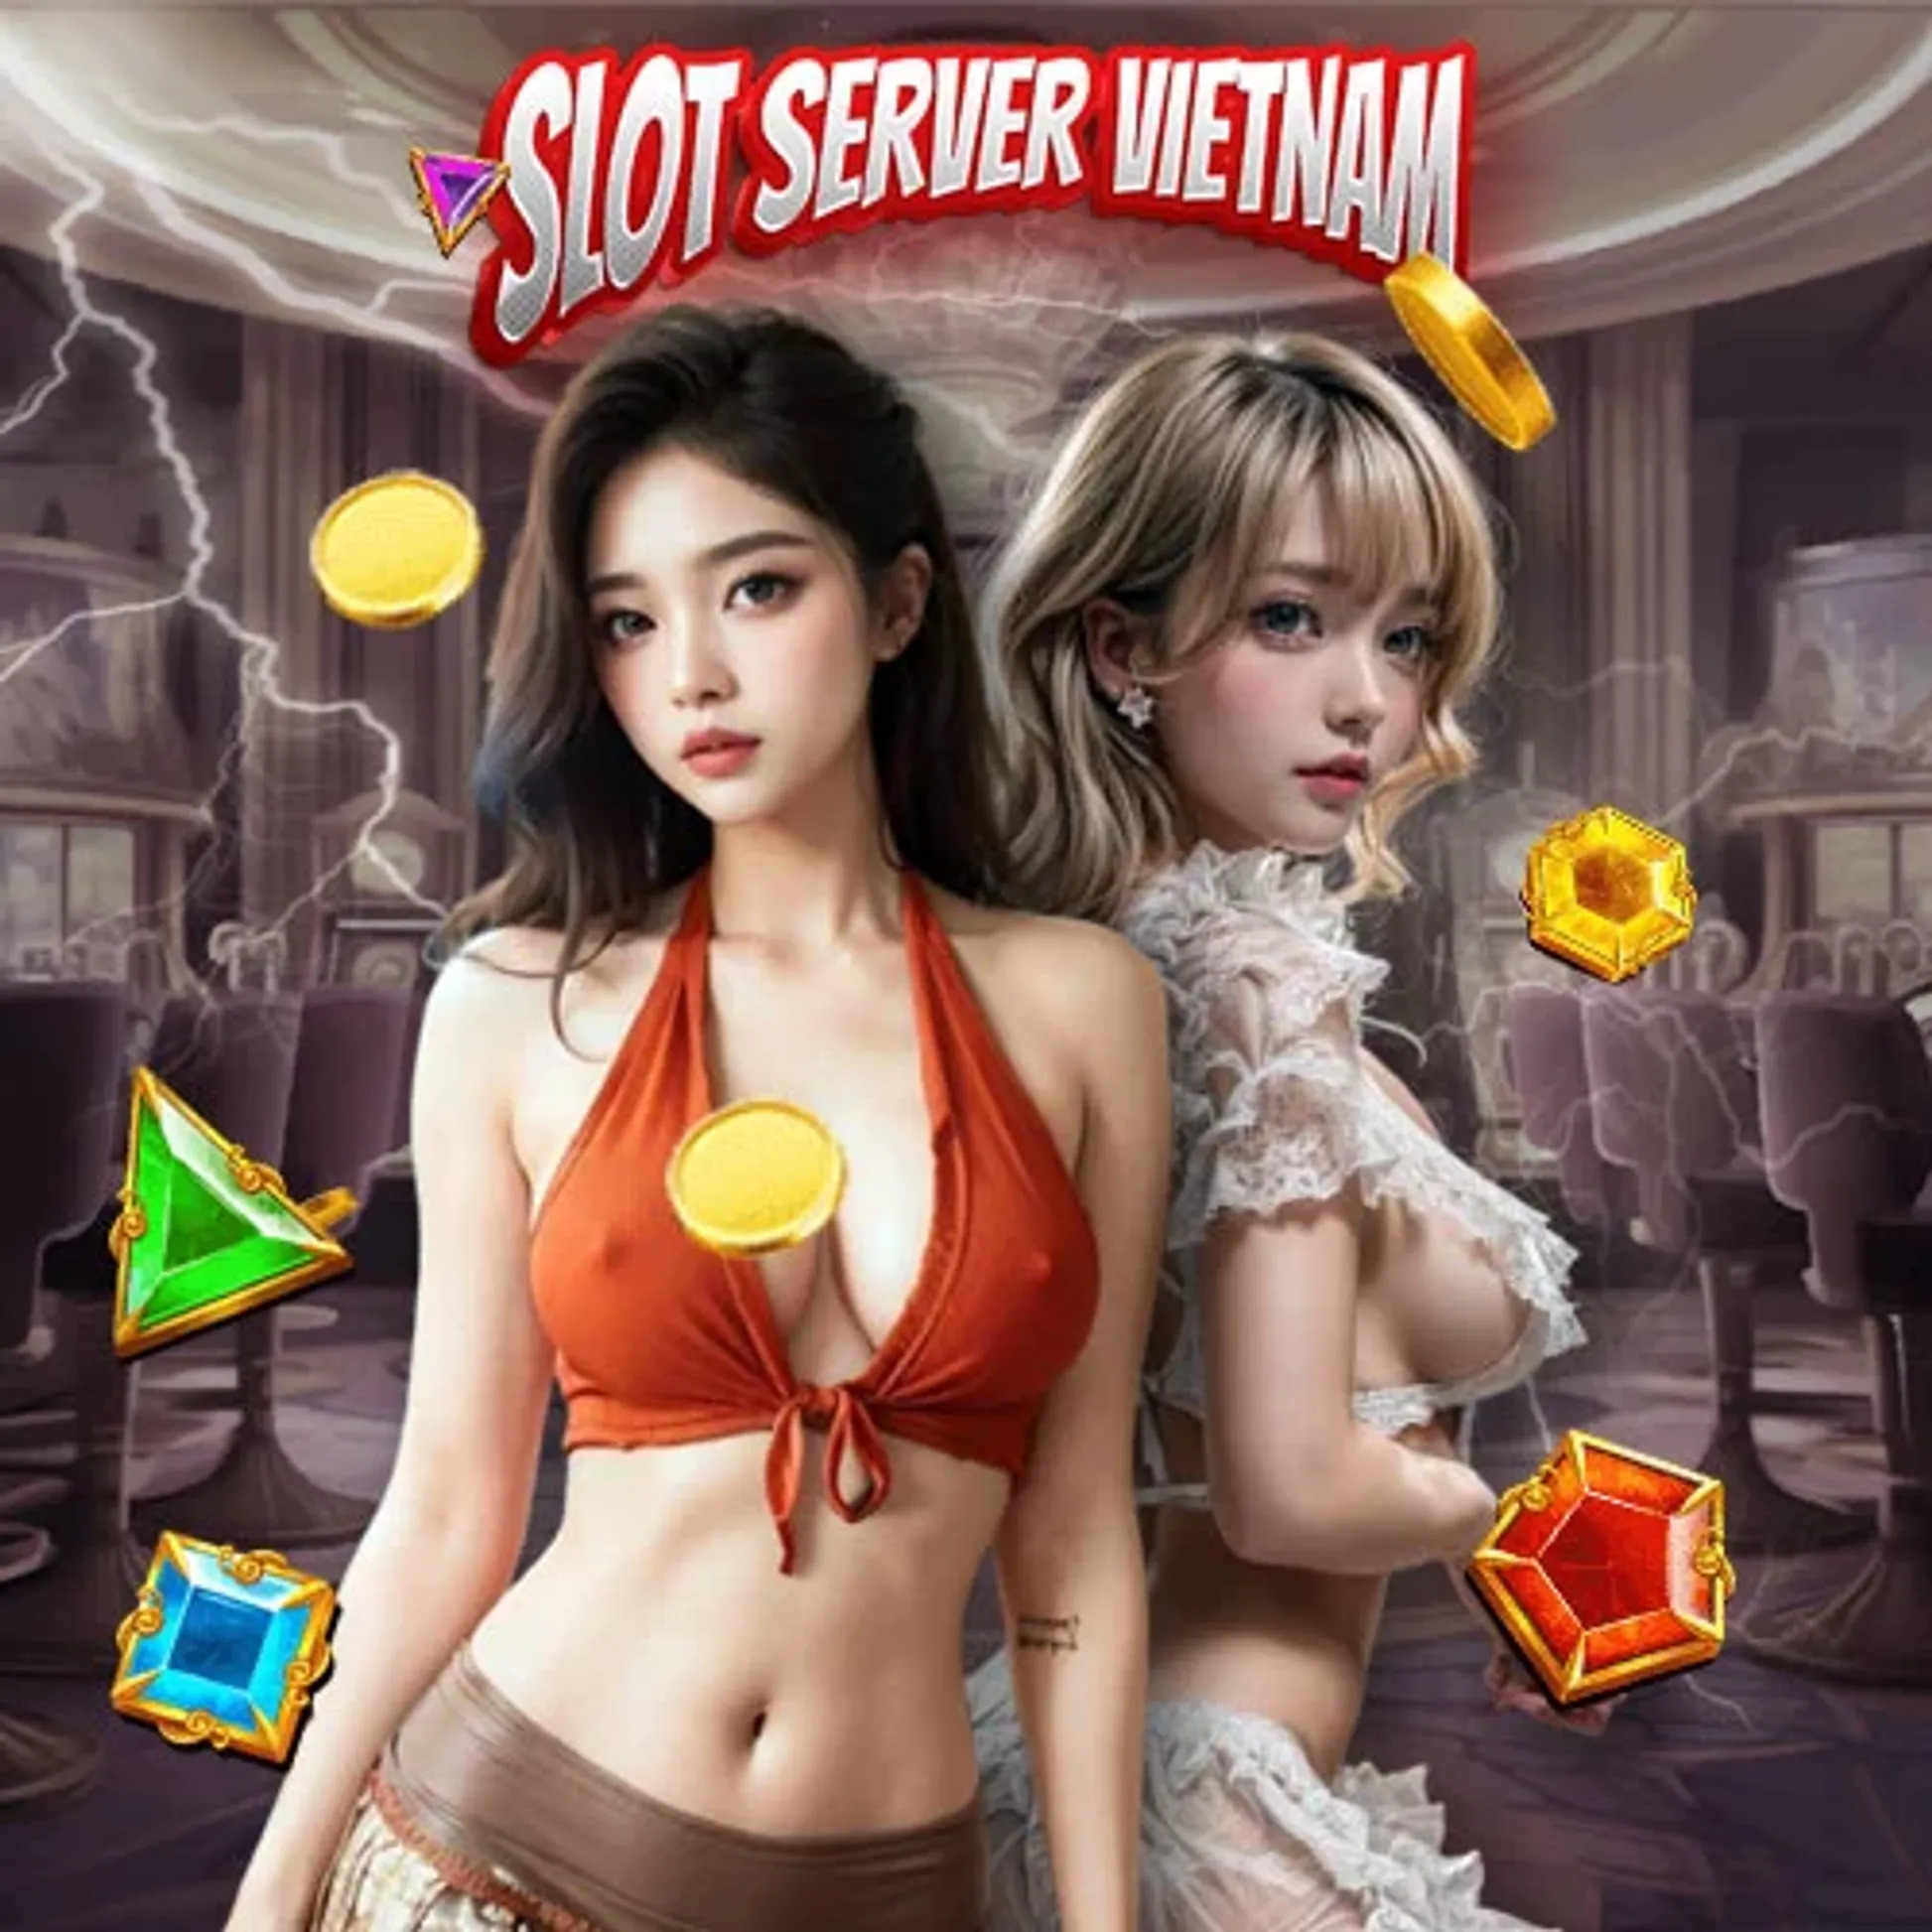 Update Terbaru: Slot777 Gacor dari Server Vietnam dan Thailand Siap Jadi Jutawan